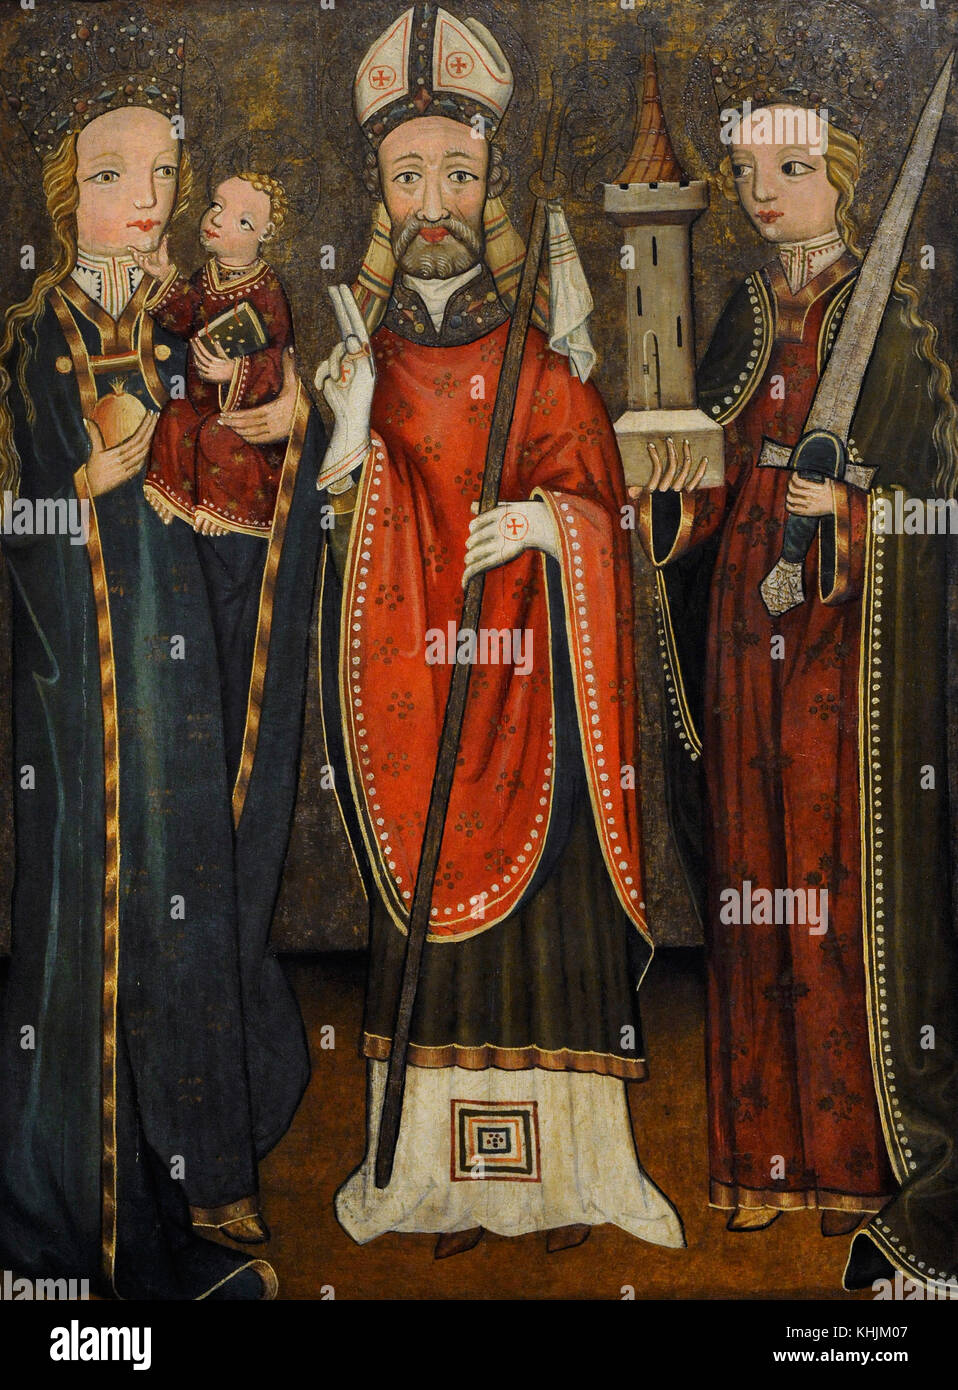 La sainte conversation avec saint Nicolas, 1440-1450 tempera sur panneau.. wilcza gorna, Pologne. musée de Silésie. Katowice. Pologne. Banque D'Images